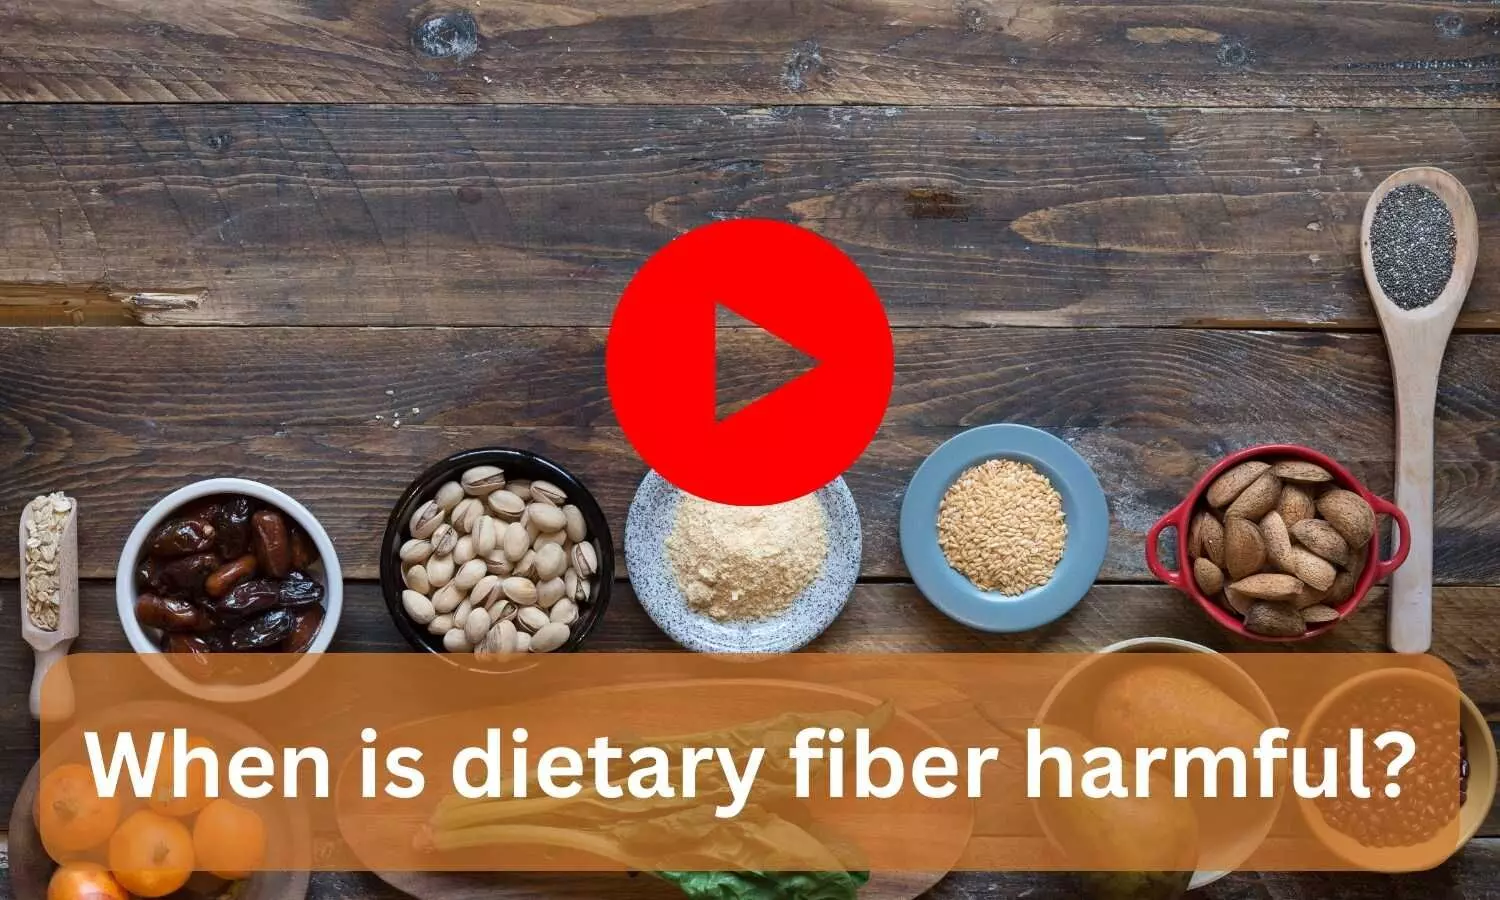 When is dietary fiber harmful?